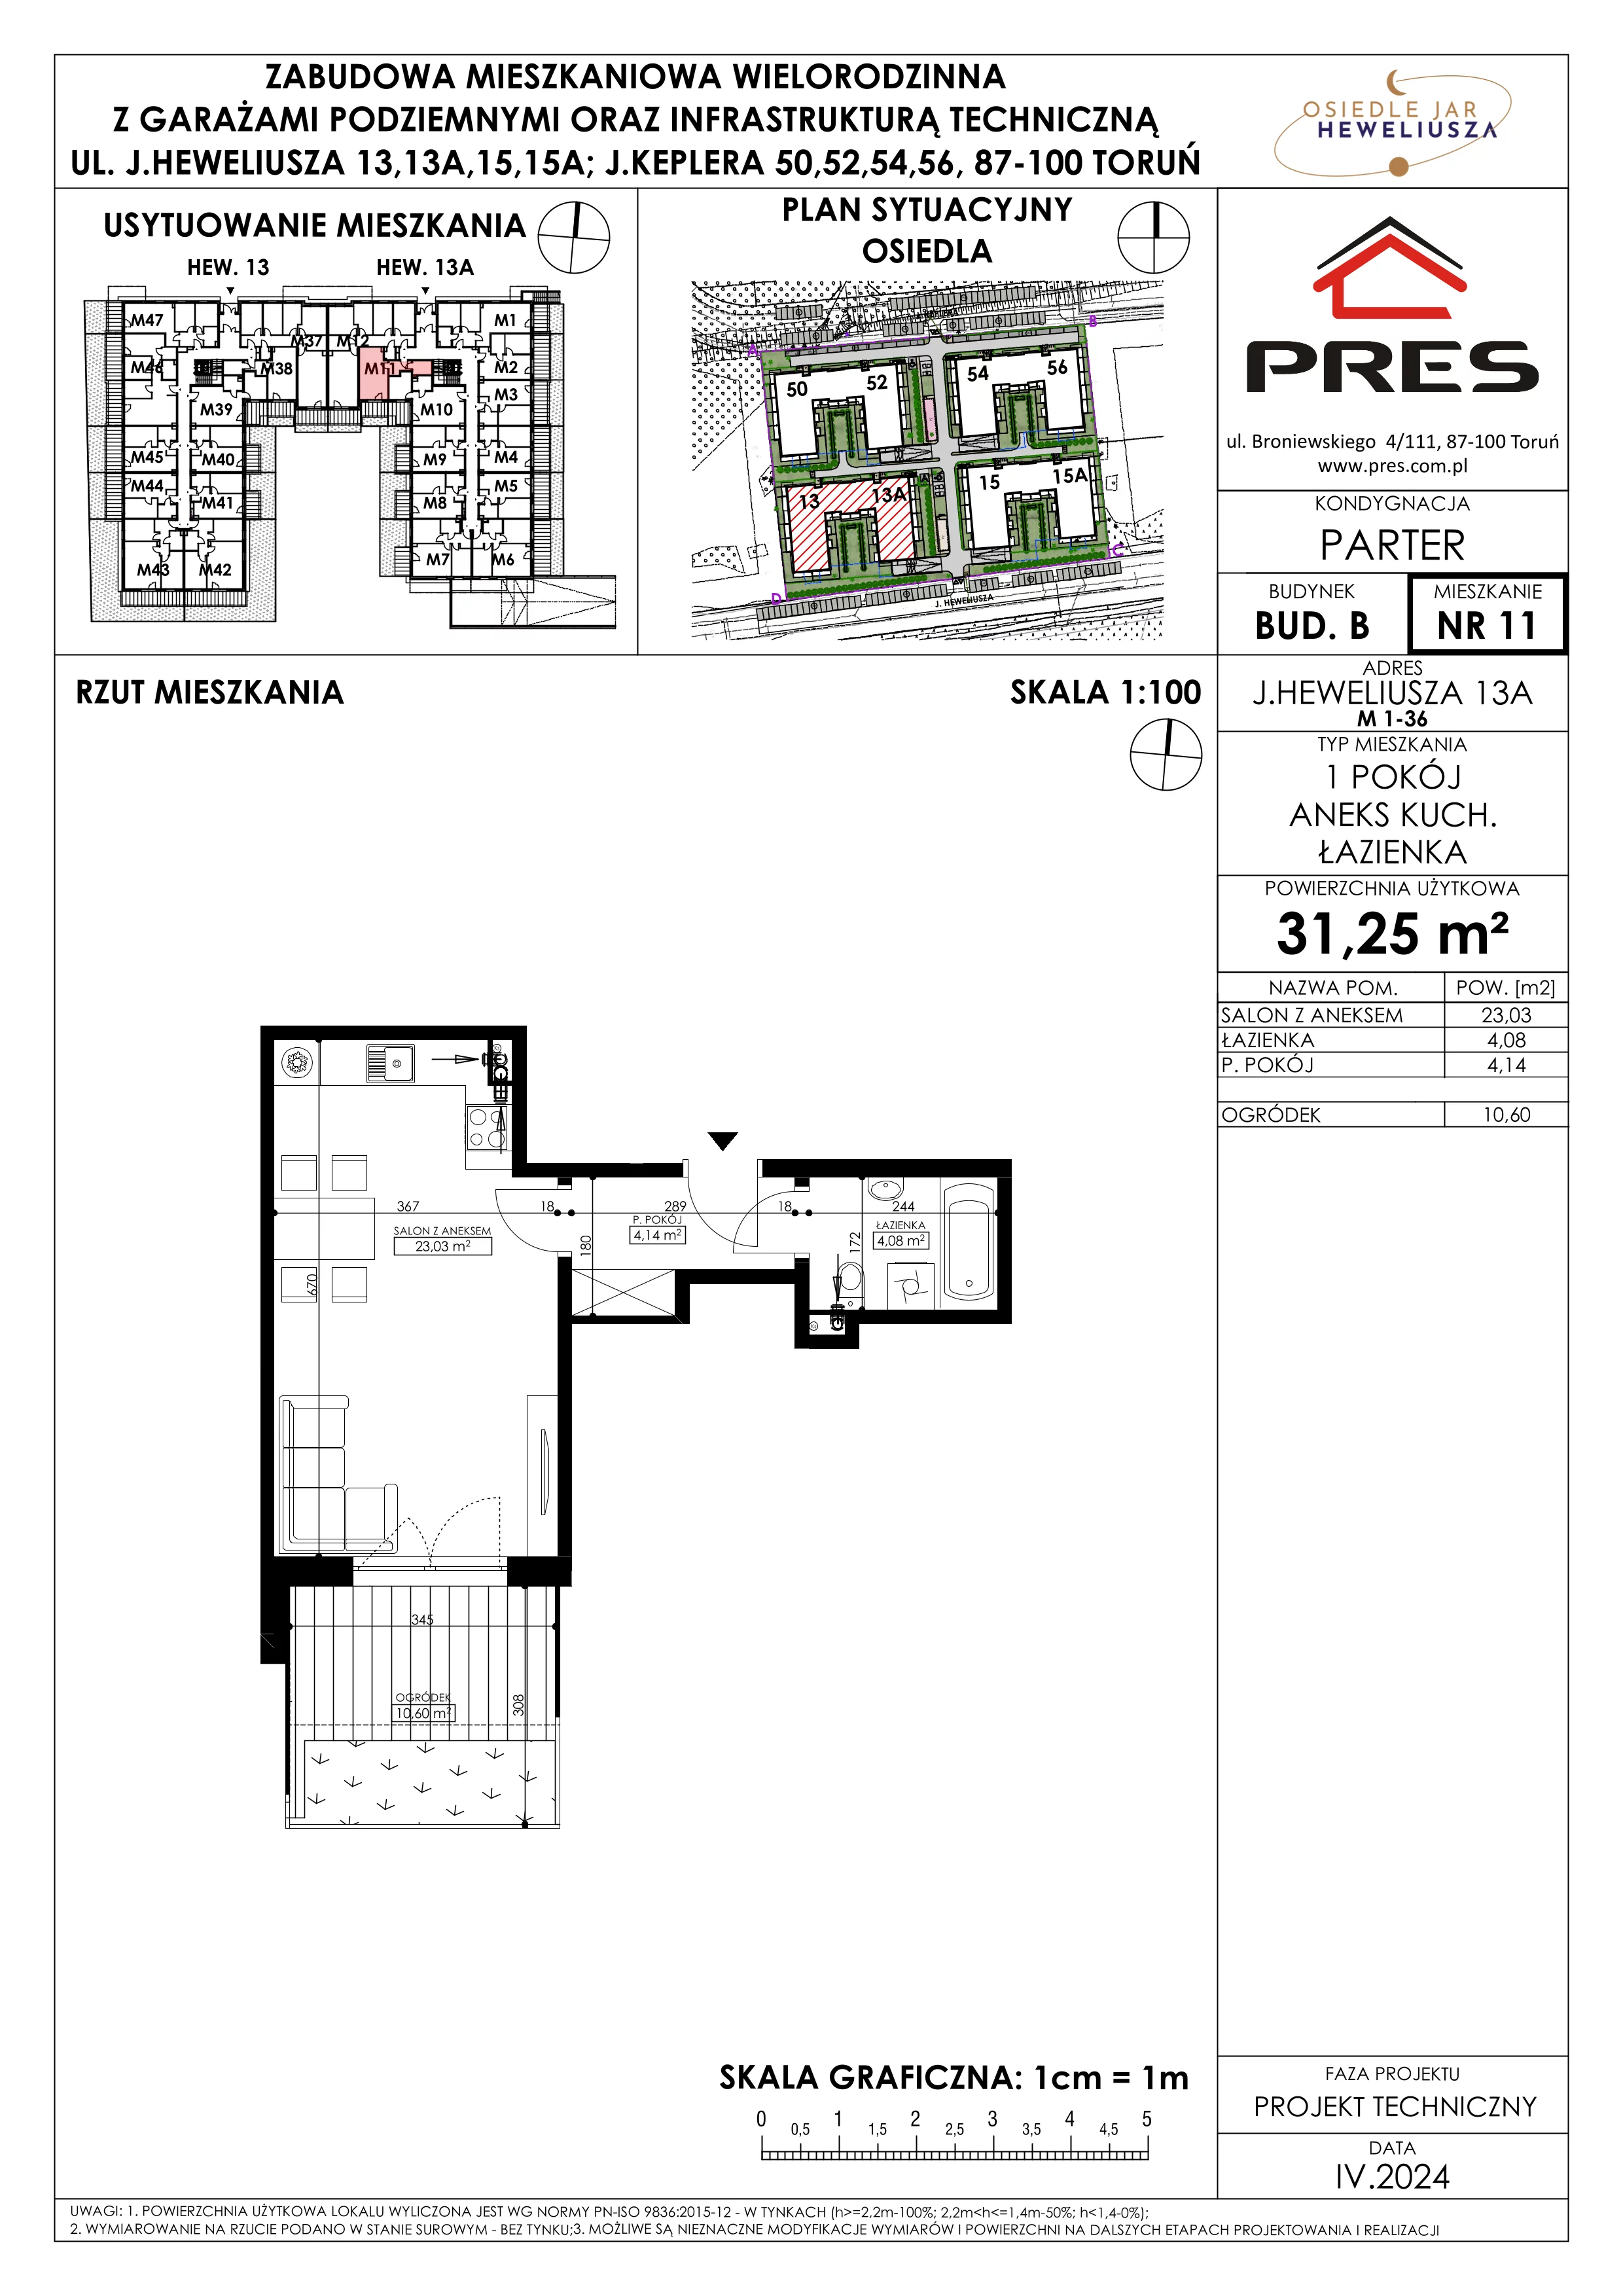 Mieszkanie 31,25 m², parter, oferta nr 11, Osiedle JAR Heweliusza - Etap II, Toruń, Wrzosy, JAR, ul. Heweliusza 13-15A